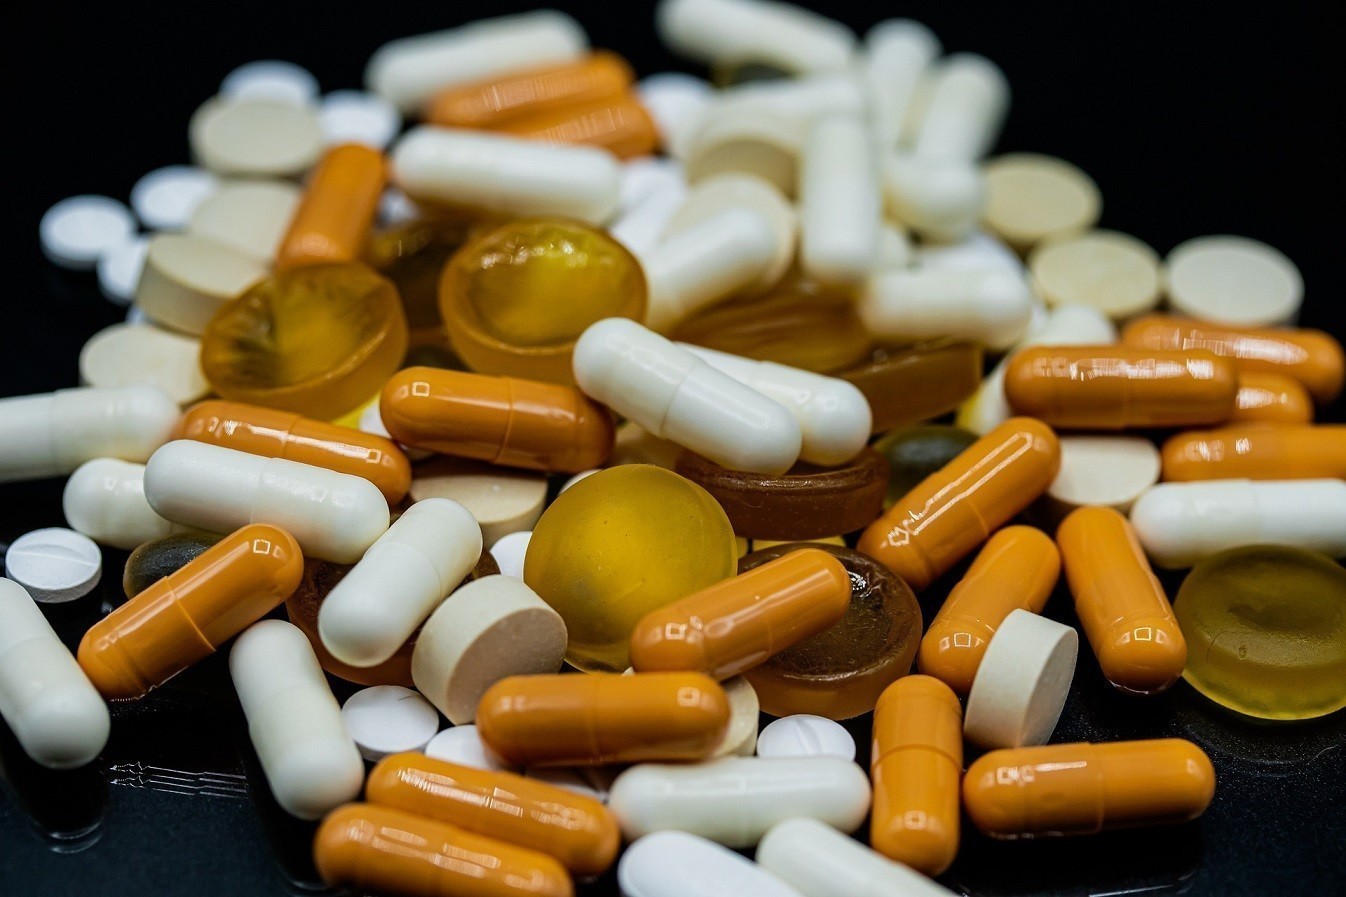 ΕΟΦ: Αυτά τα 235 φάρμακα είναι σε έλλειψη – Πώς θα τα αντικαταστήσετε (λίστα)